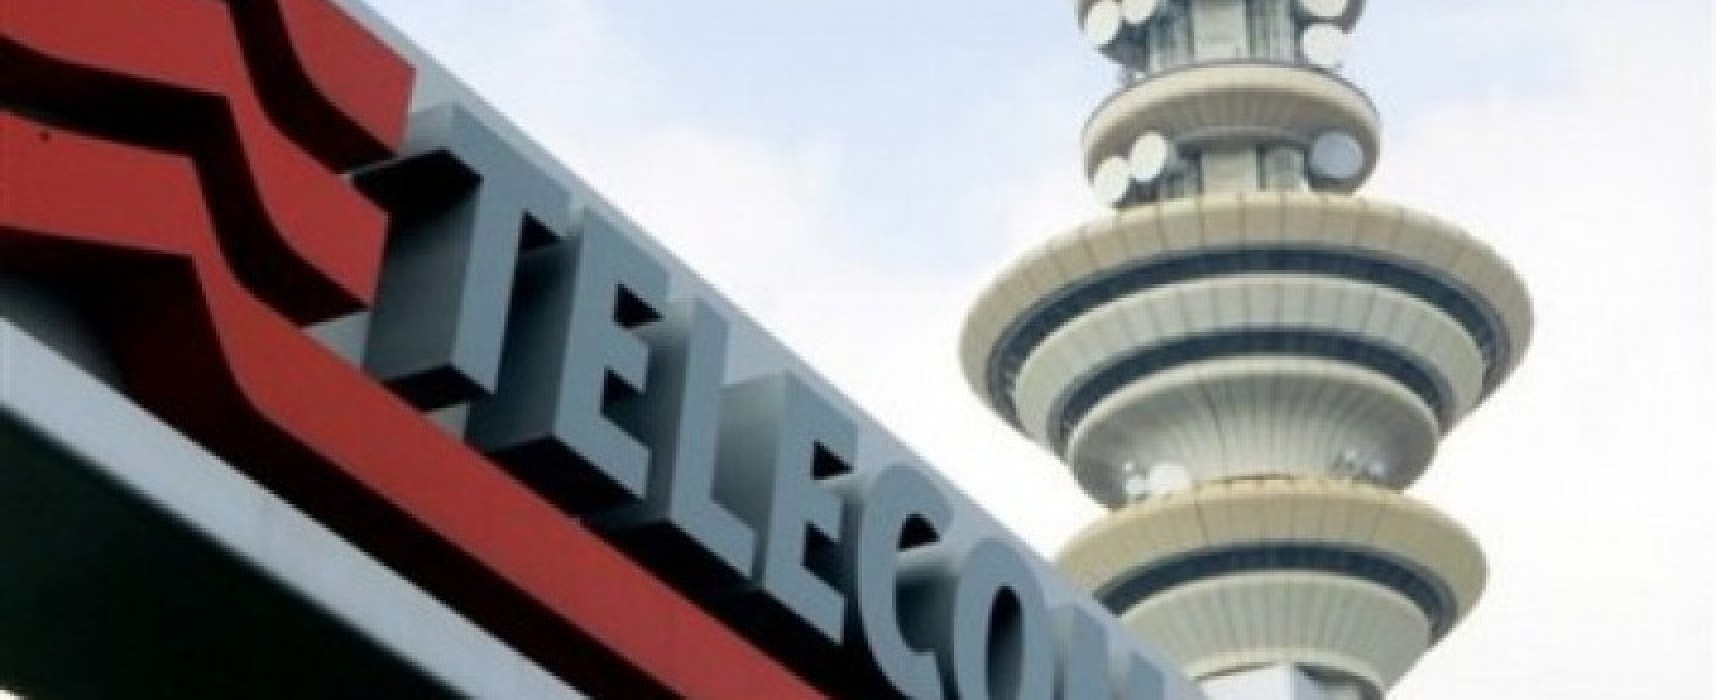 Internet a banda ultra larga, anche Bisceglie avrà la fibra ottica entro giugno 2016